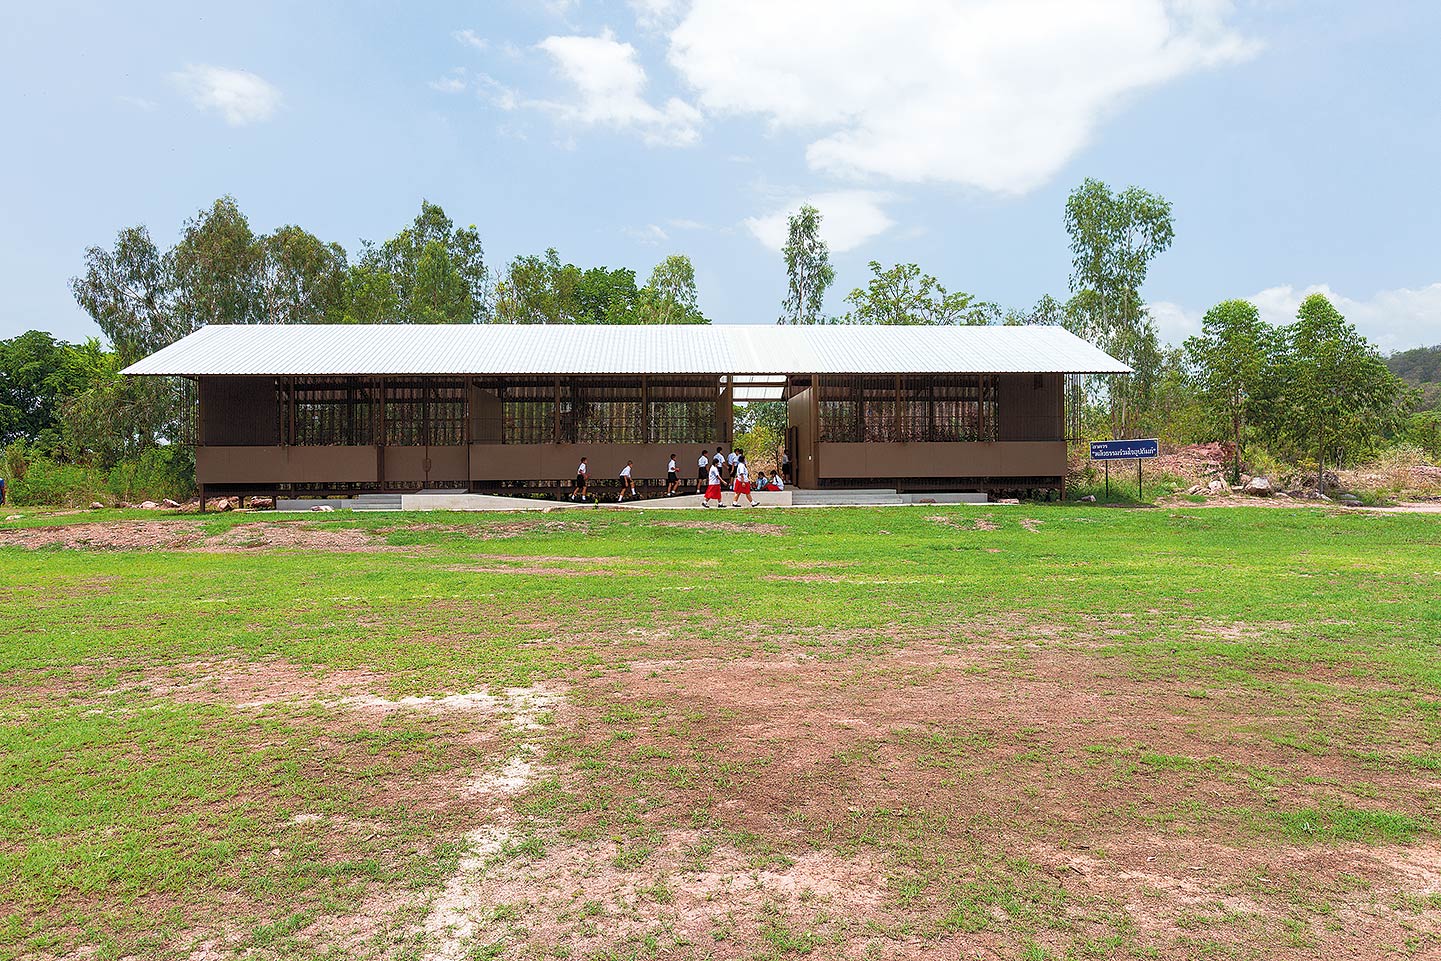 ห้องเรียนพอดีพอดีของโรงเรียนบ้านดอนตันตั้งอยู่ริมสนามฟุตบอลของโรงเรียน